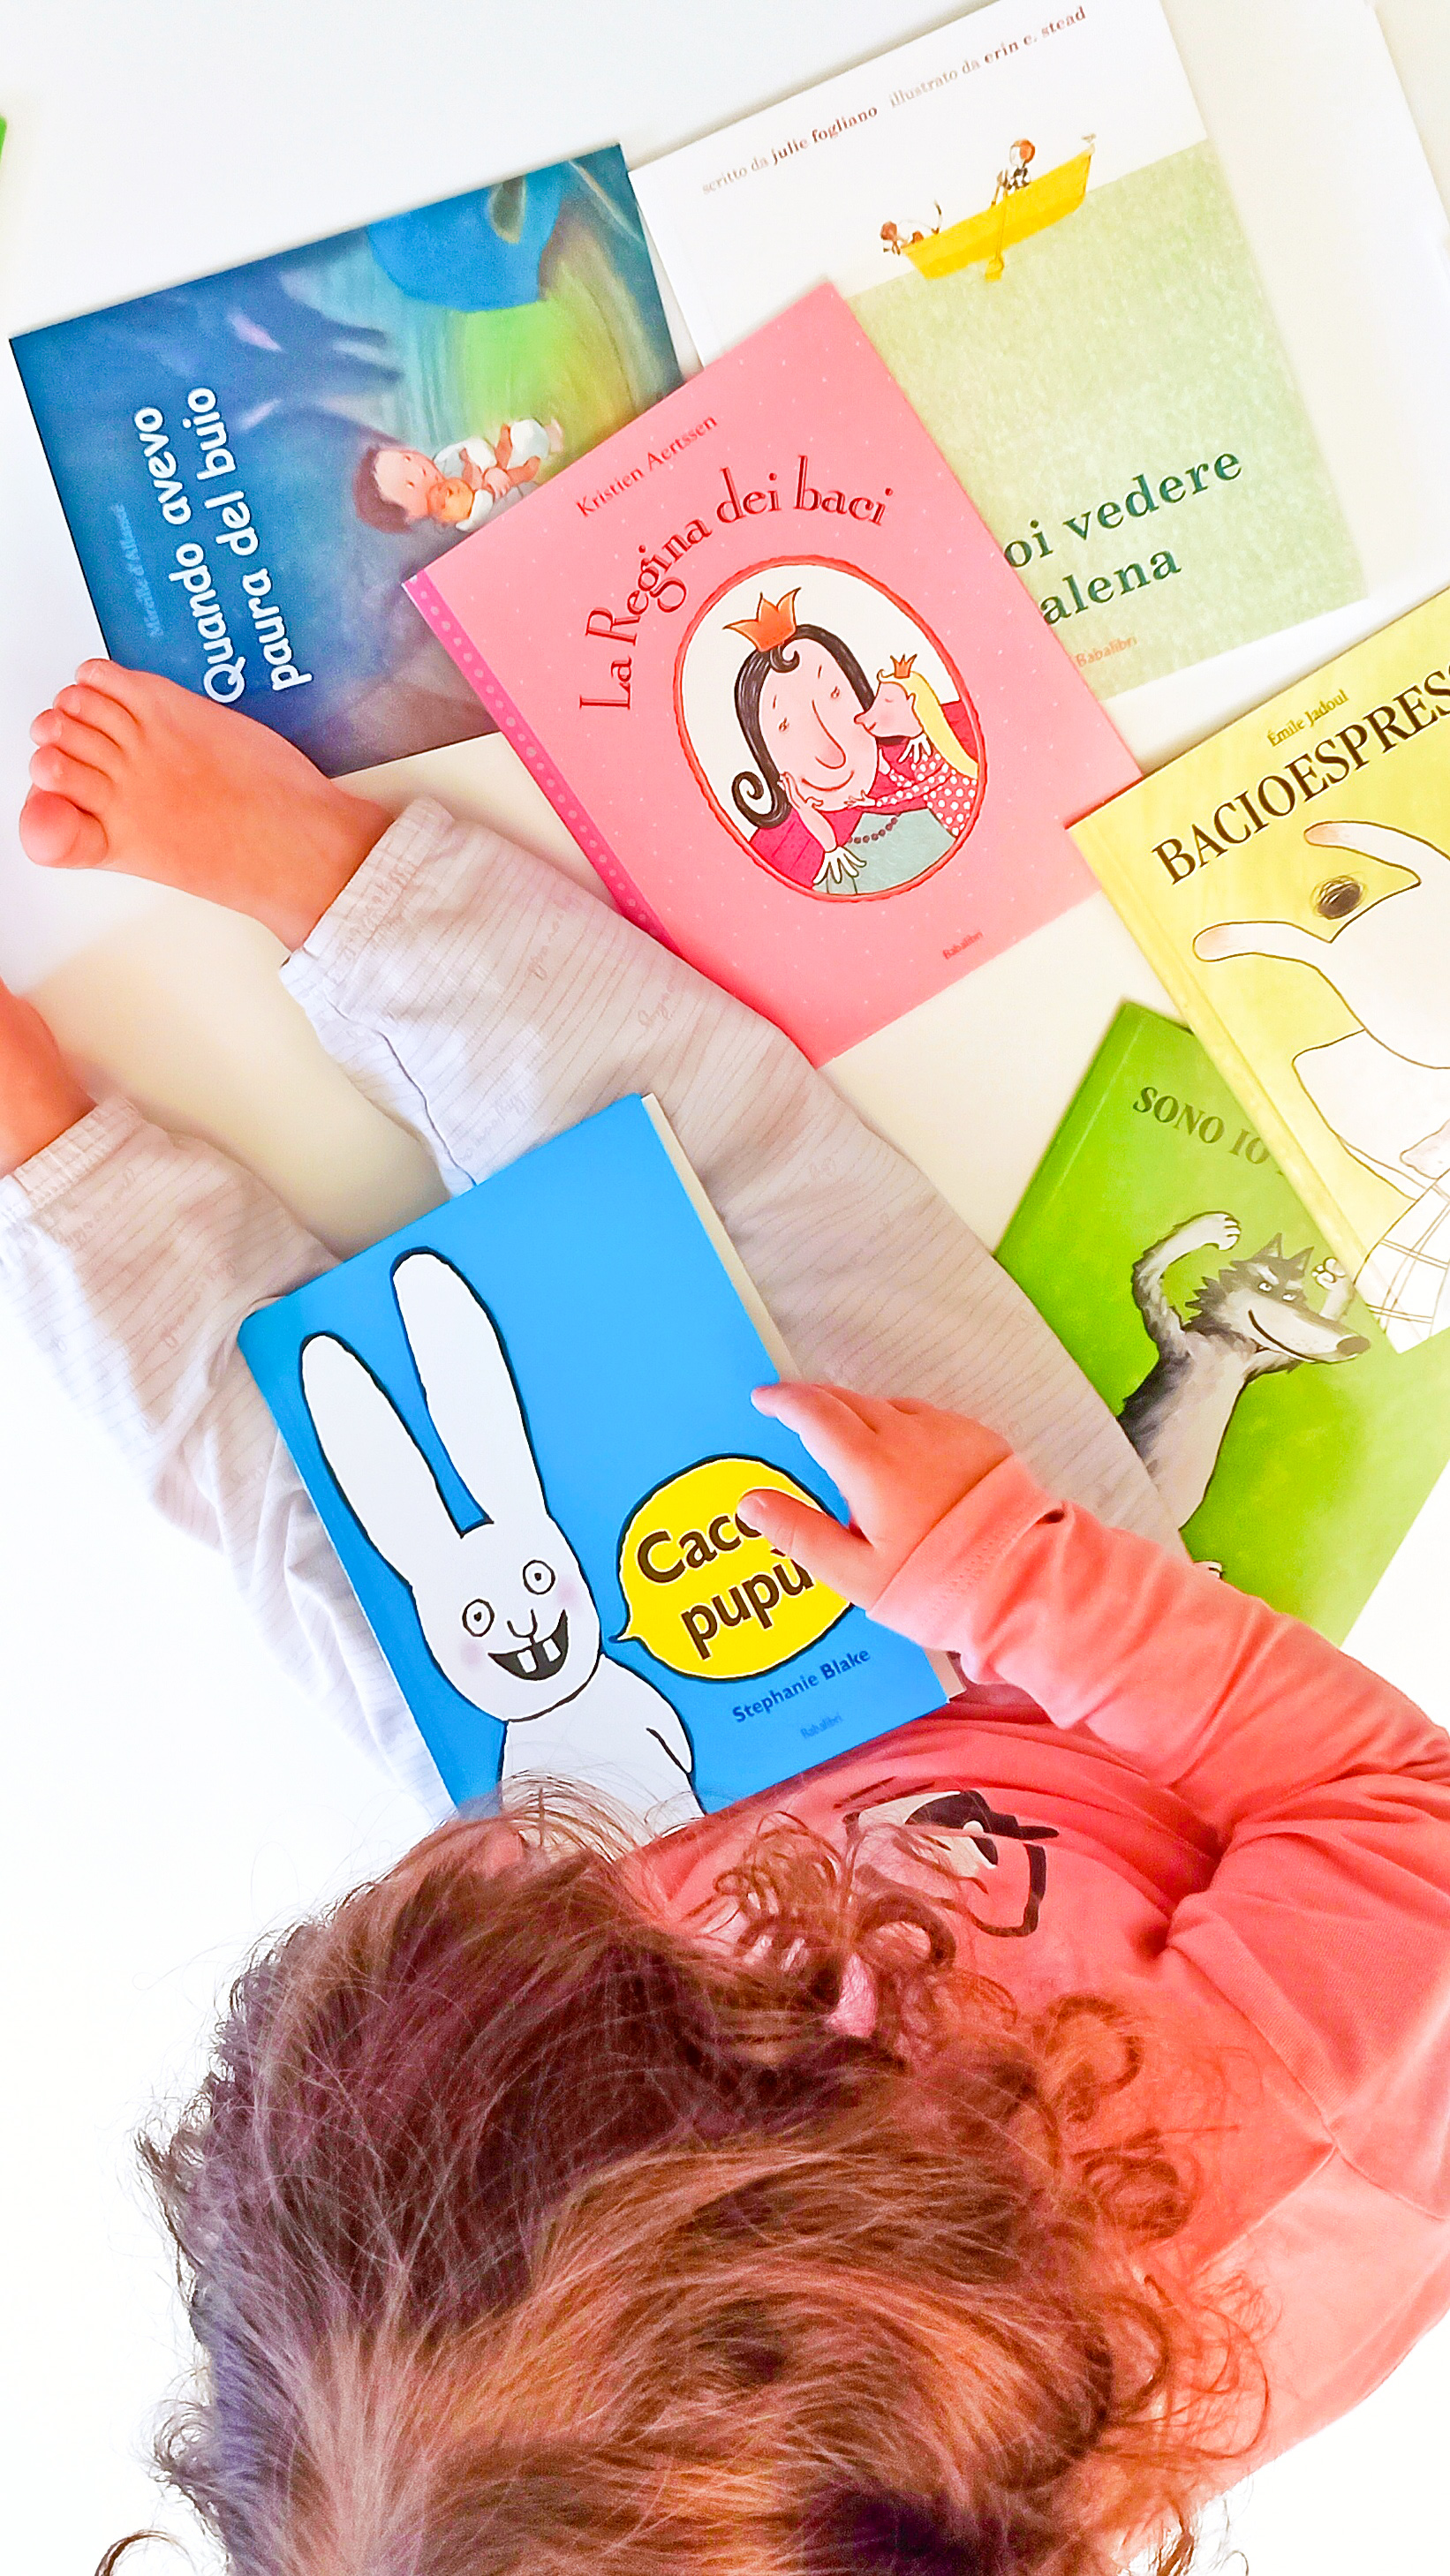 Libri per bambini: i migliori da 0 a 3 anni